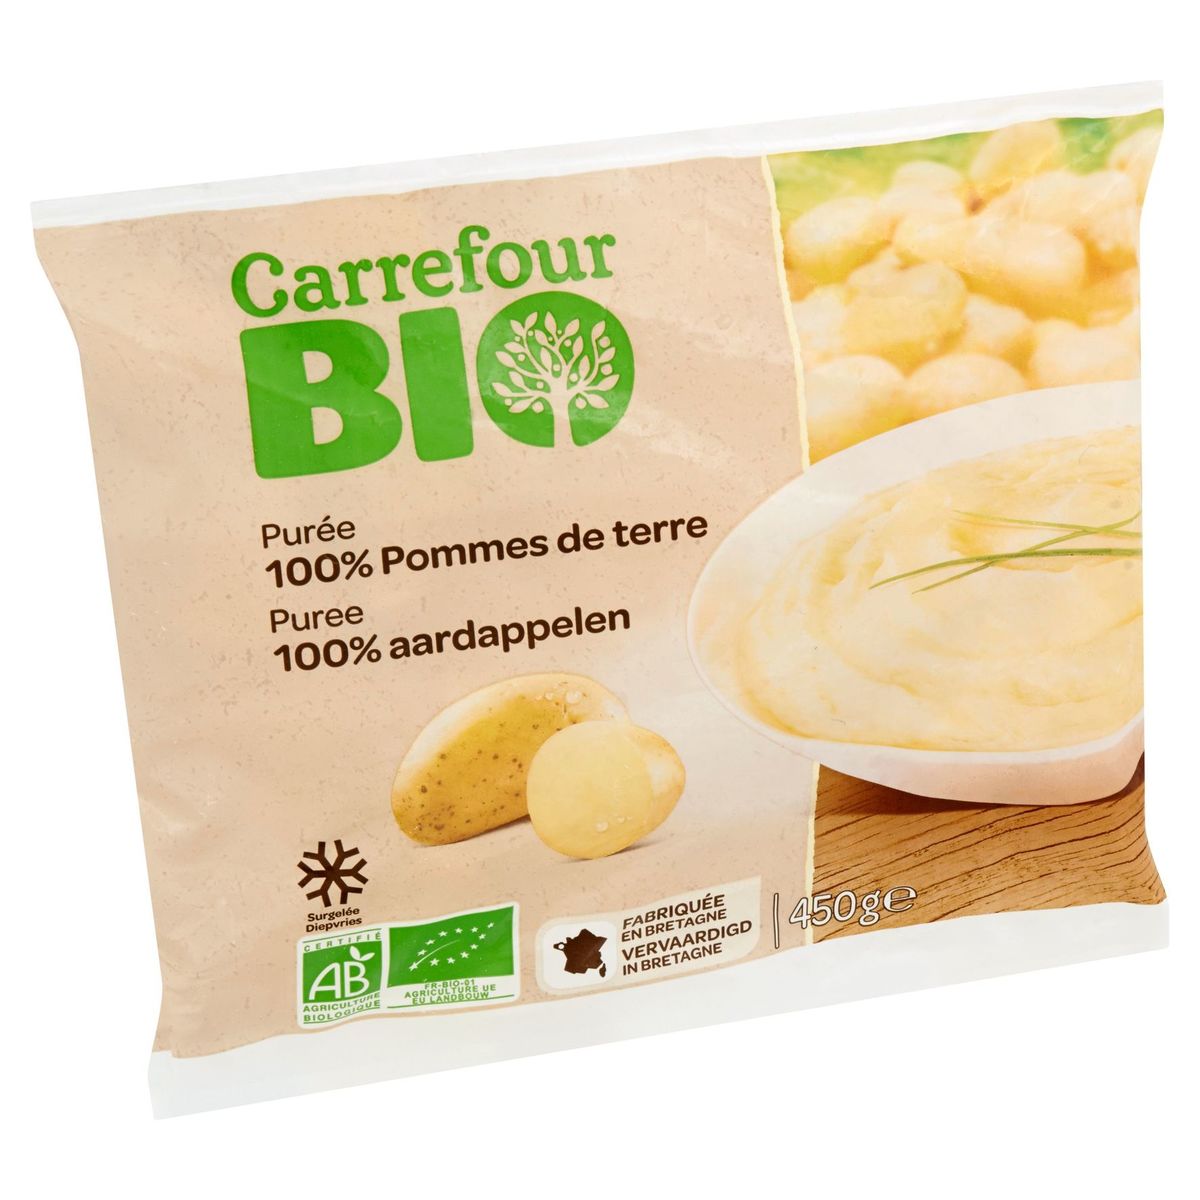 Carrefour Bio Purée 100% Pommes de Terre 450 g